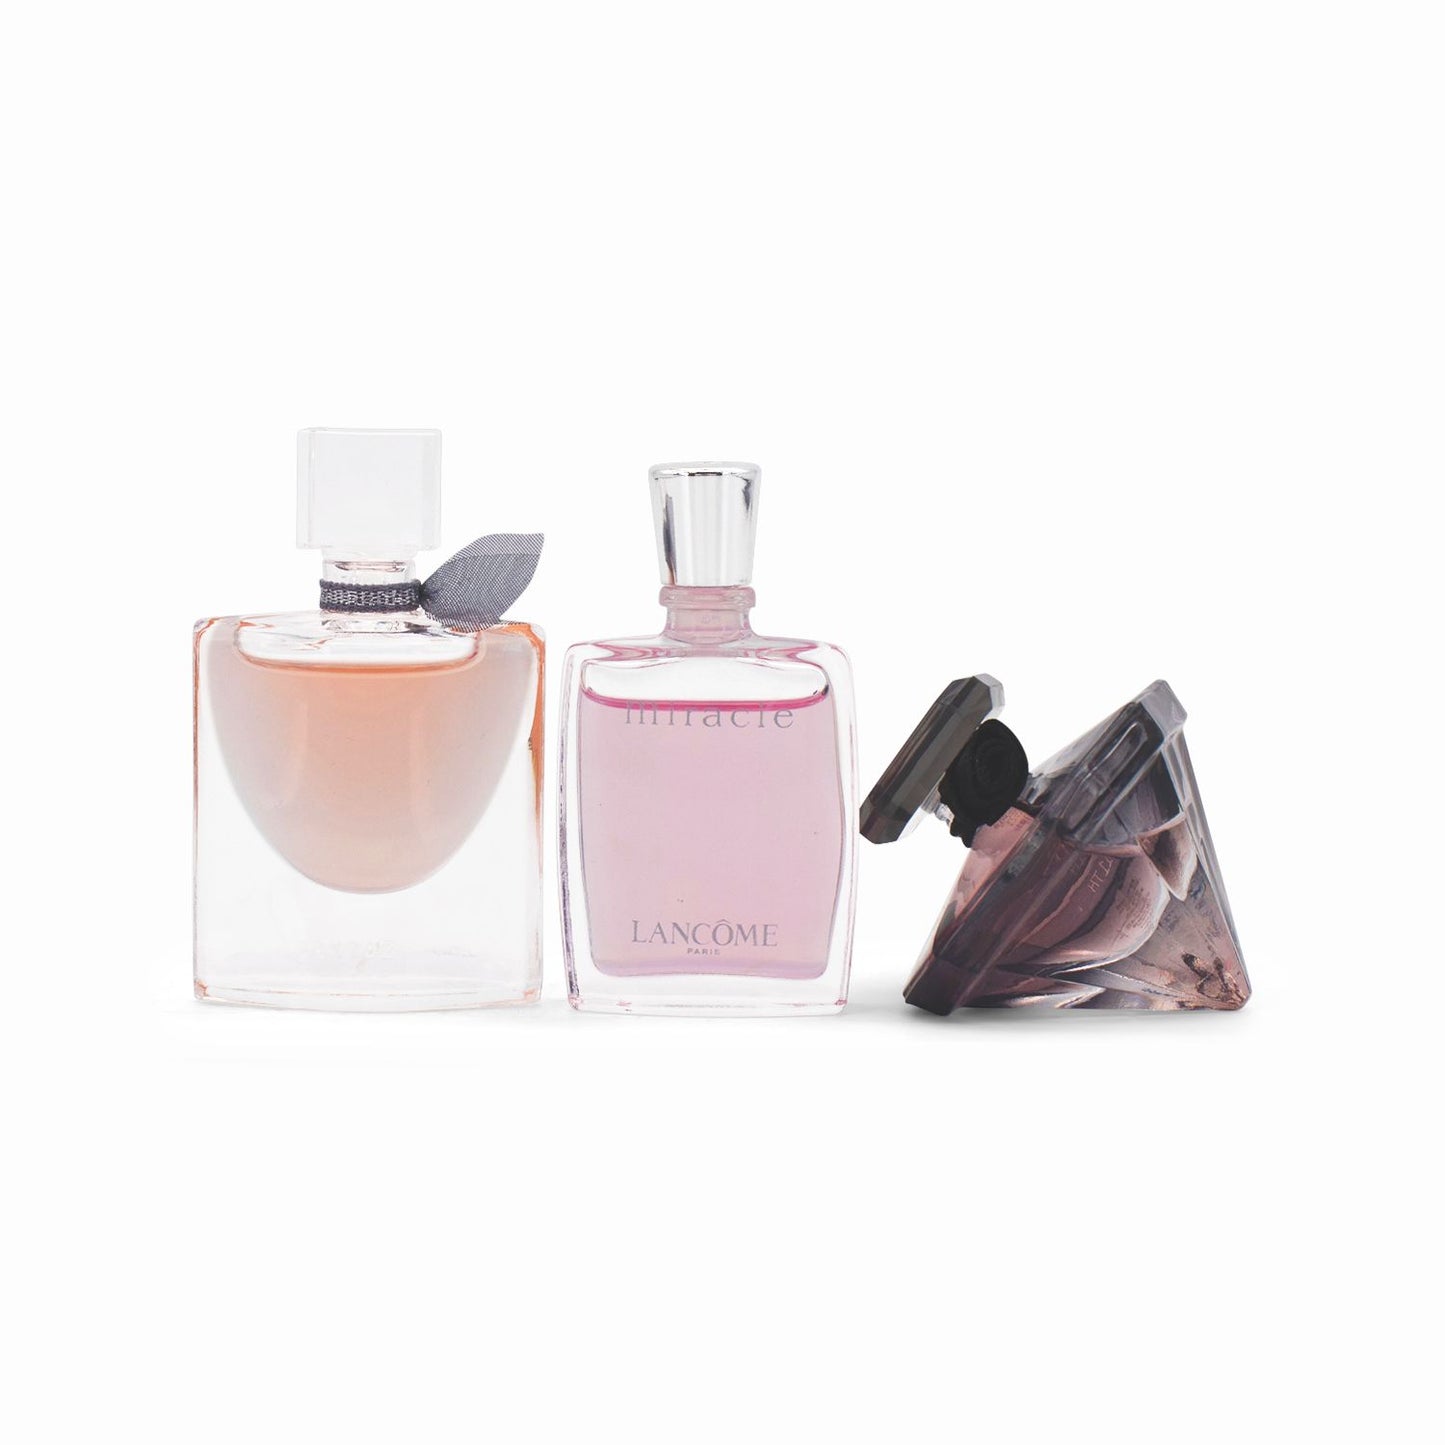 Lancome Miniature Fragrance Discovery Eau De Parfum Trio Set - Missing Box